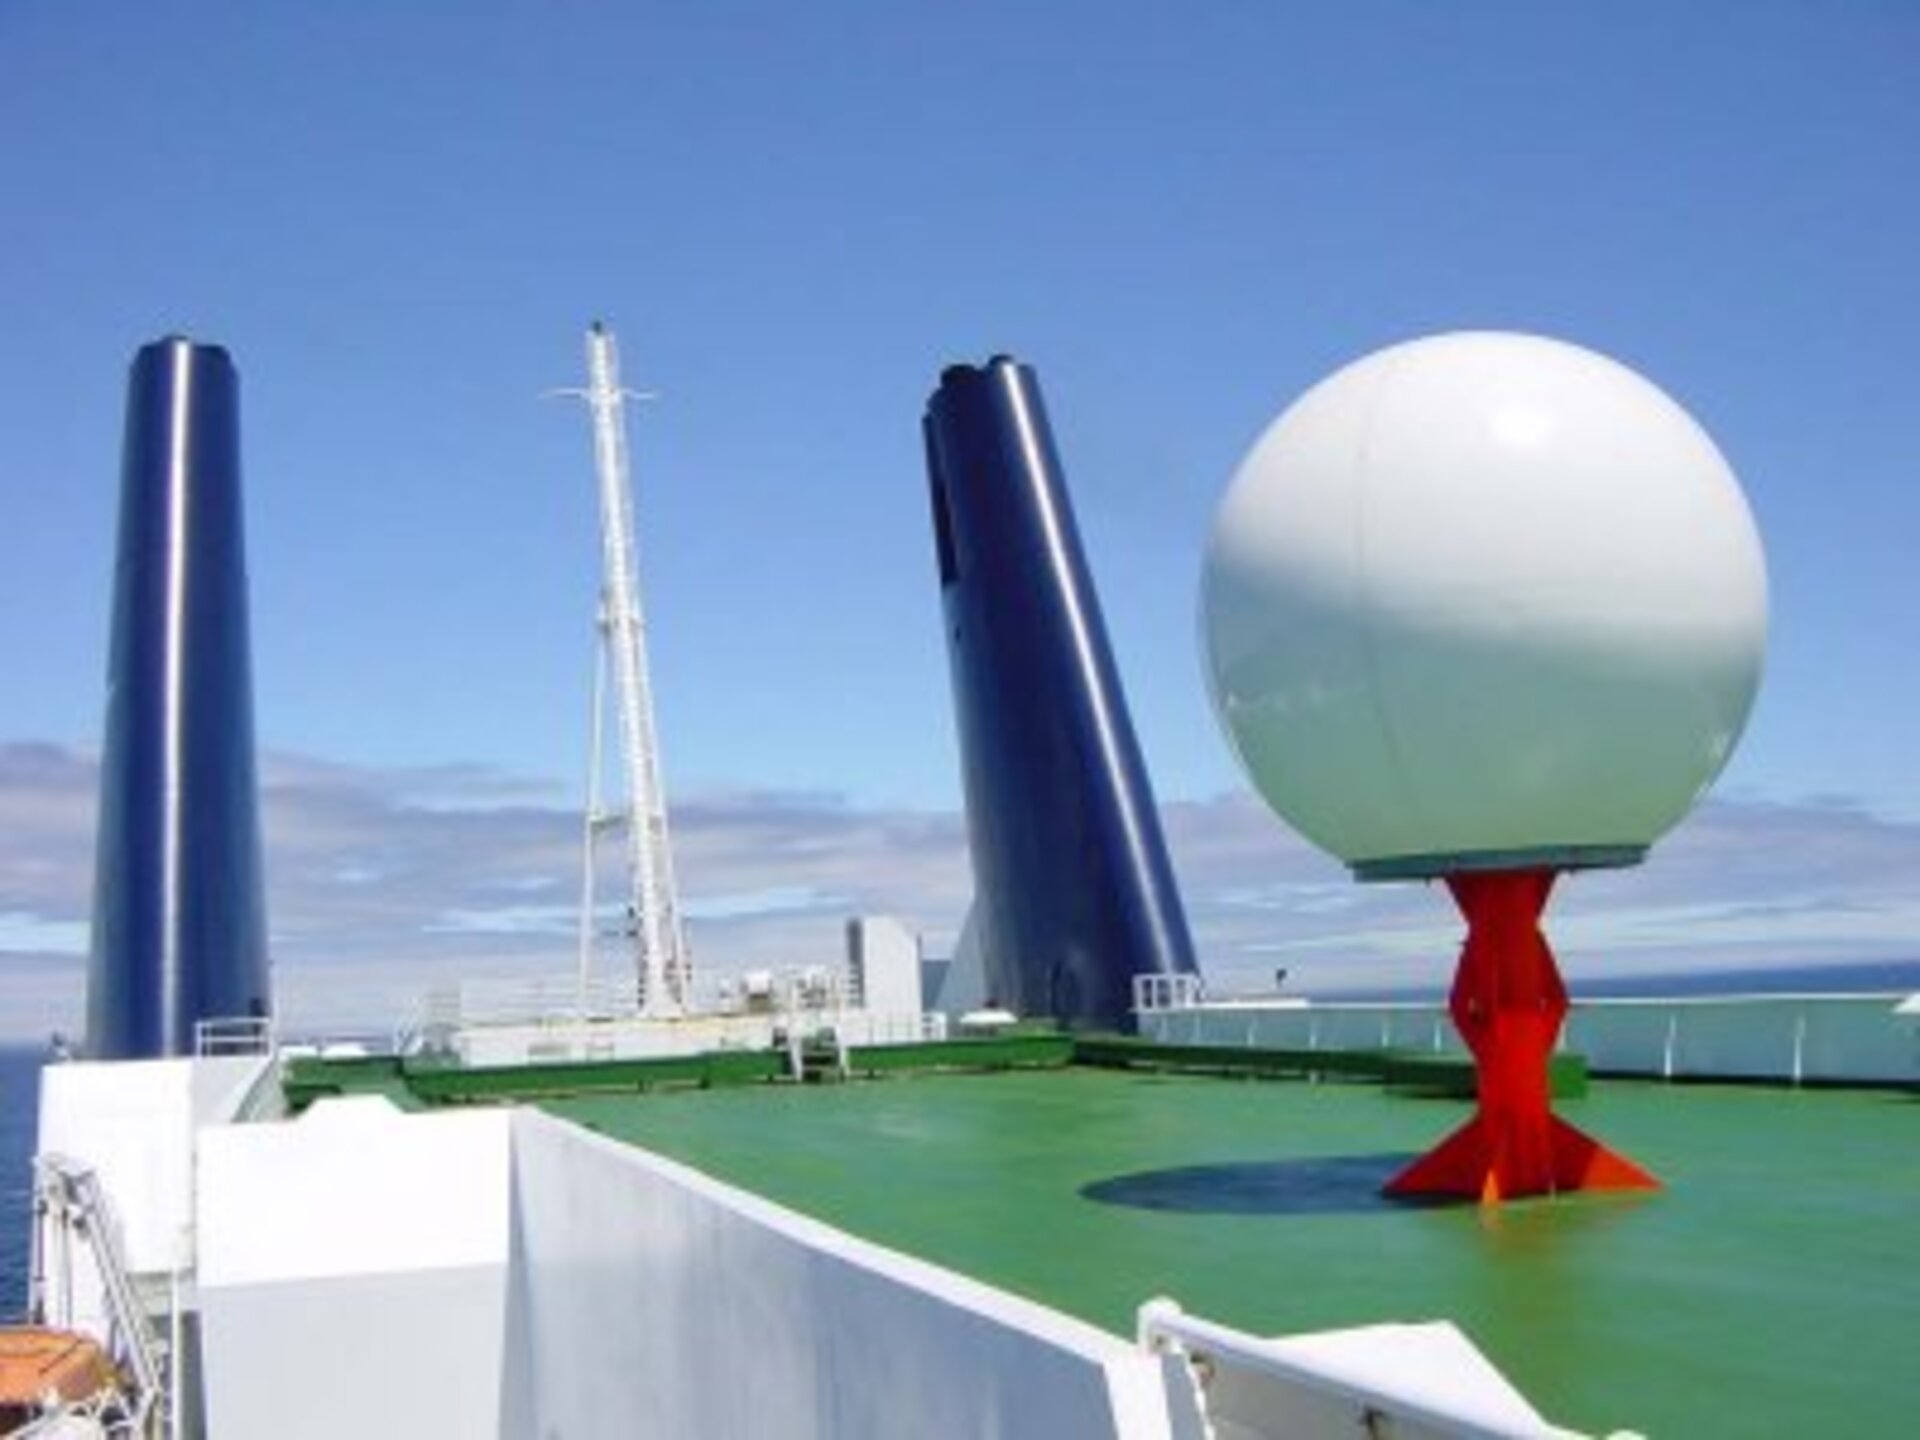 Antenna on board ship